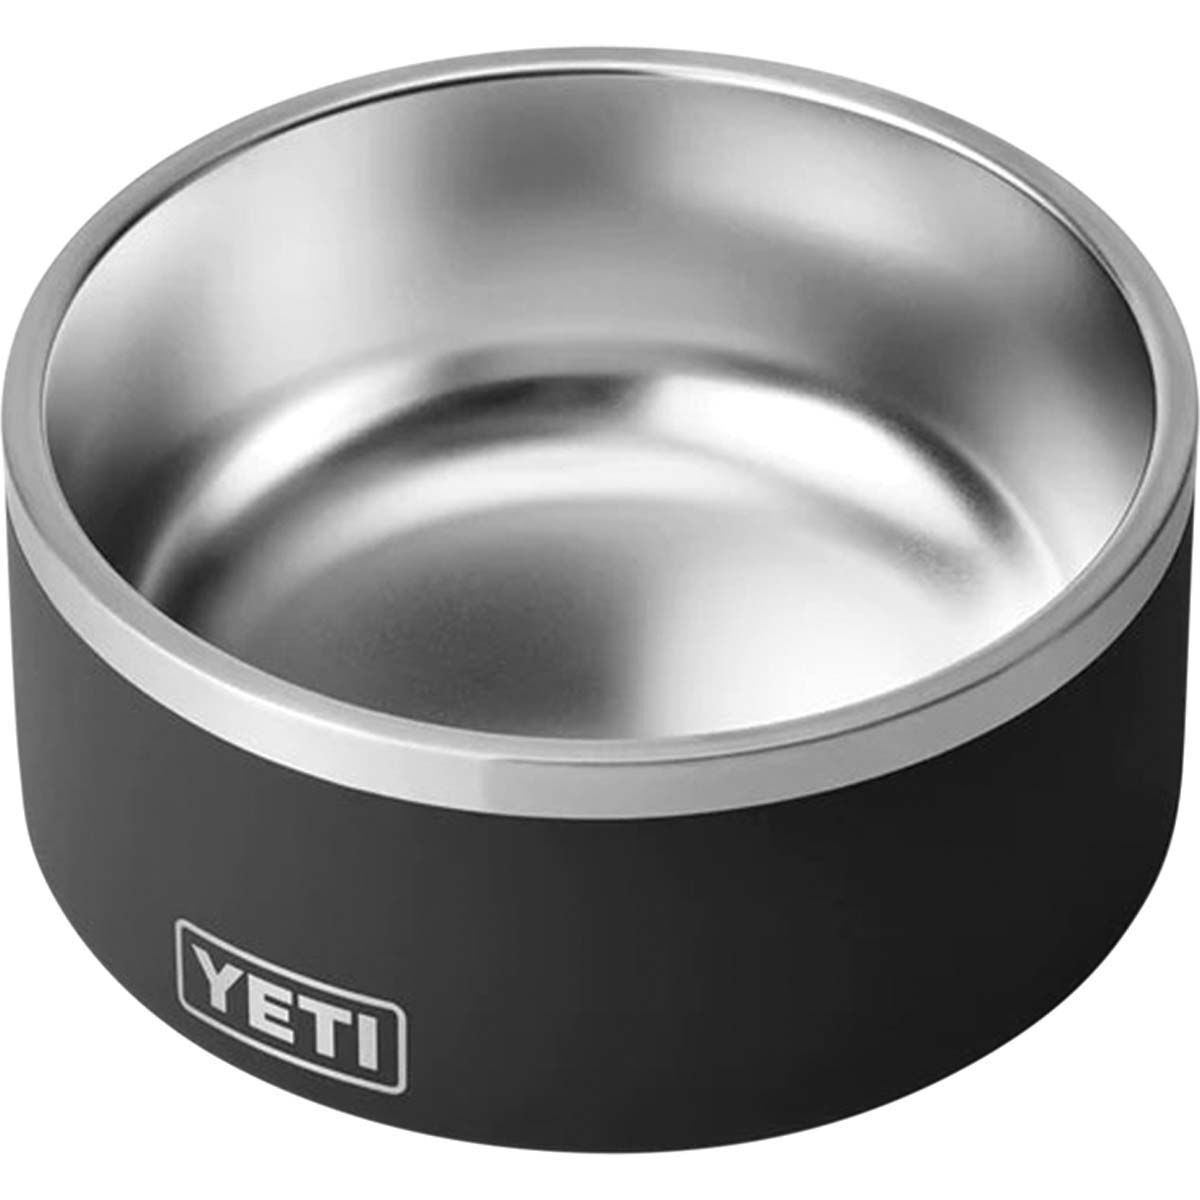 YETI Boomer™ 8 Dog Bowl Black, Black, bcf_hi-res